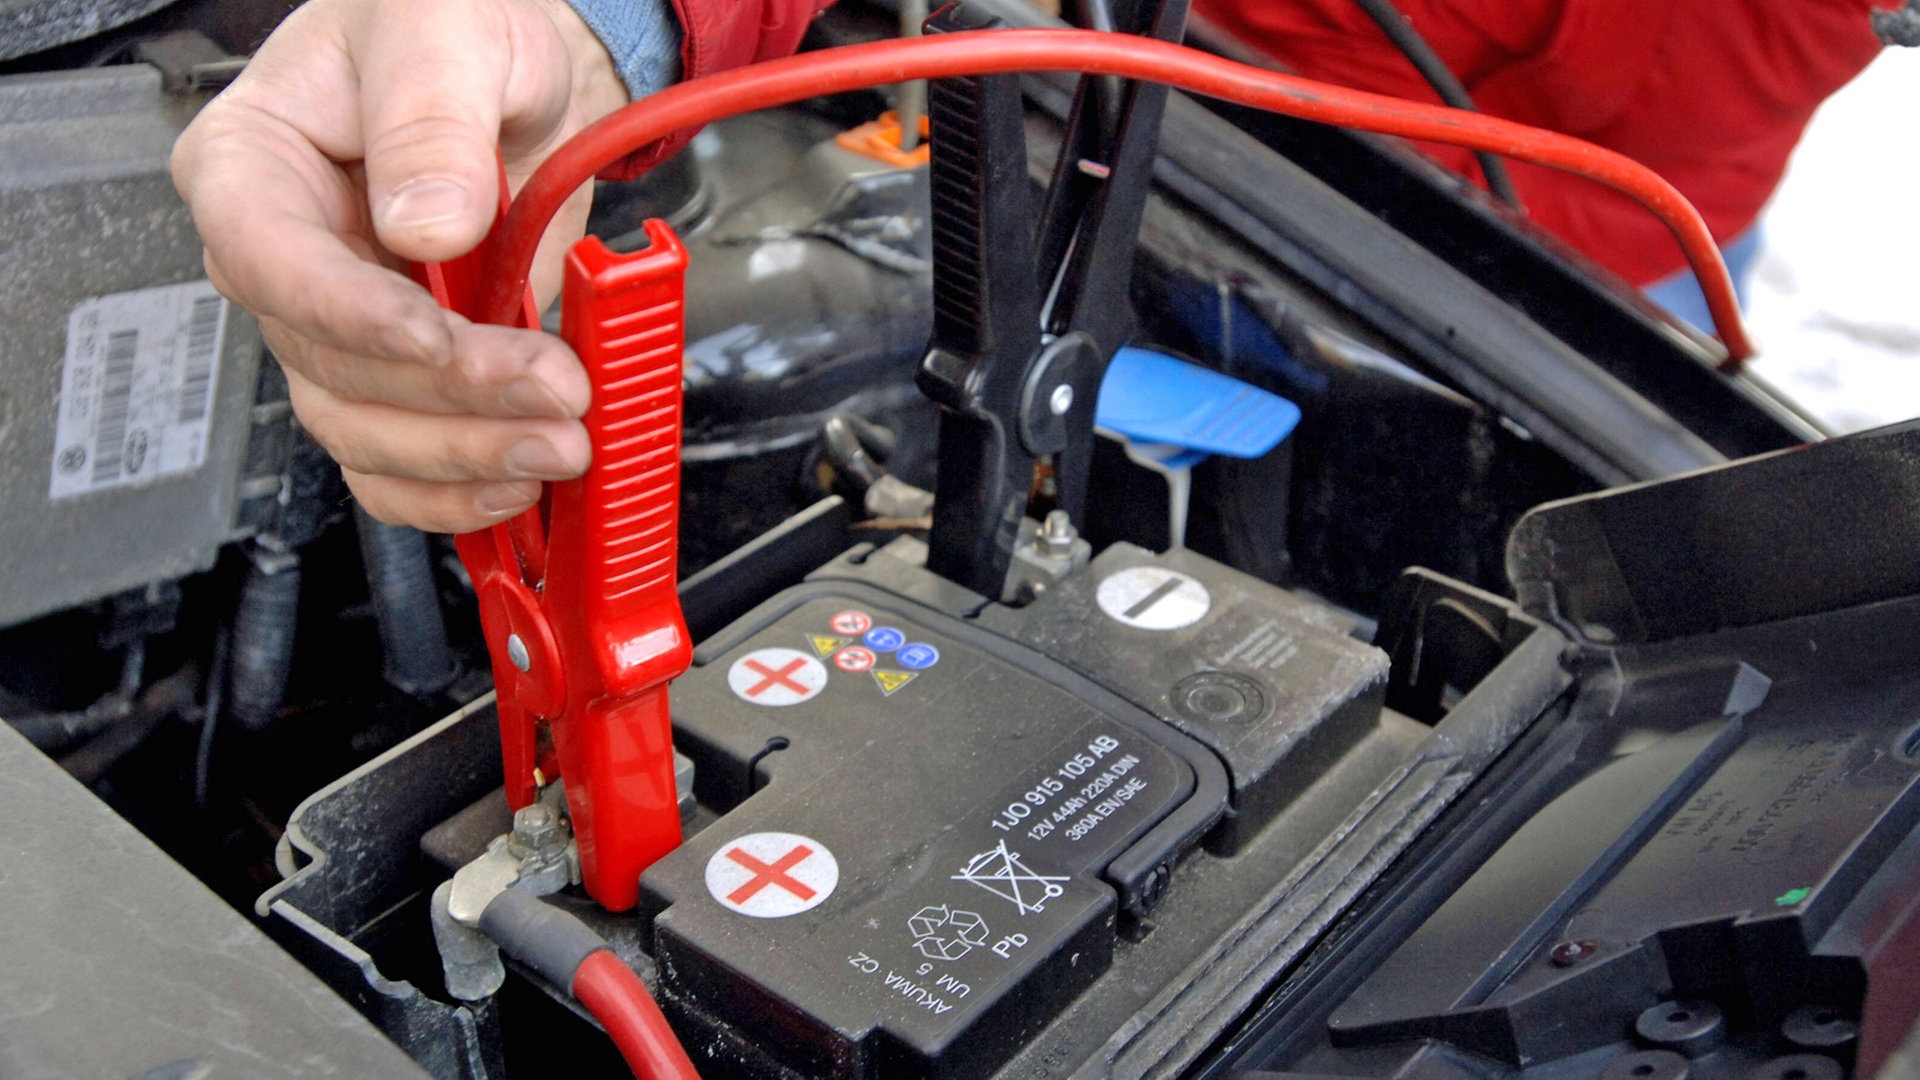 Batterie-Starthilfe-Starterklemmen für rzr-Rennwagen